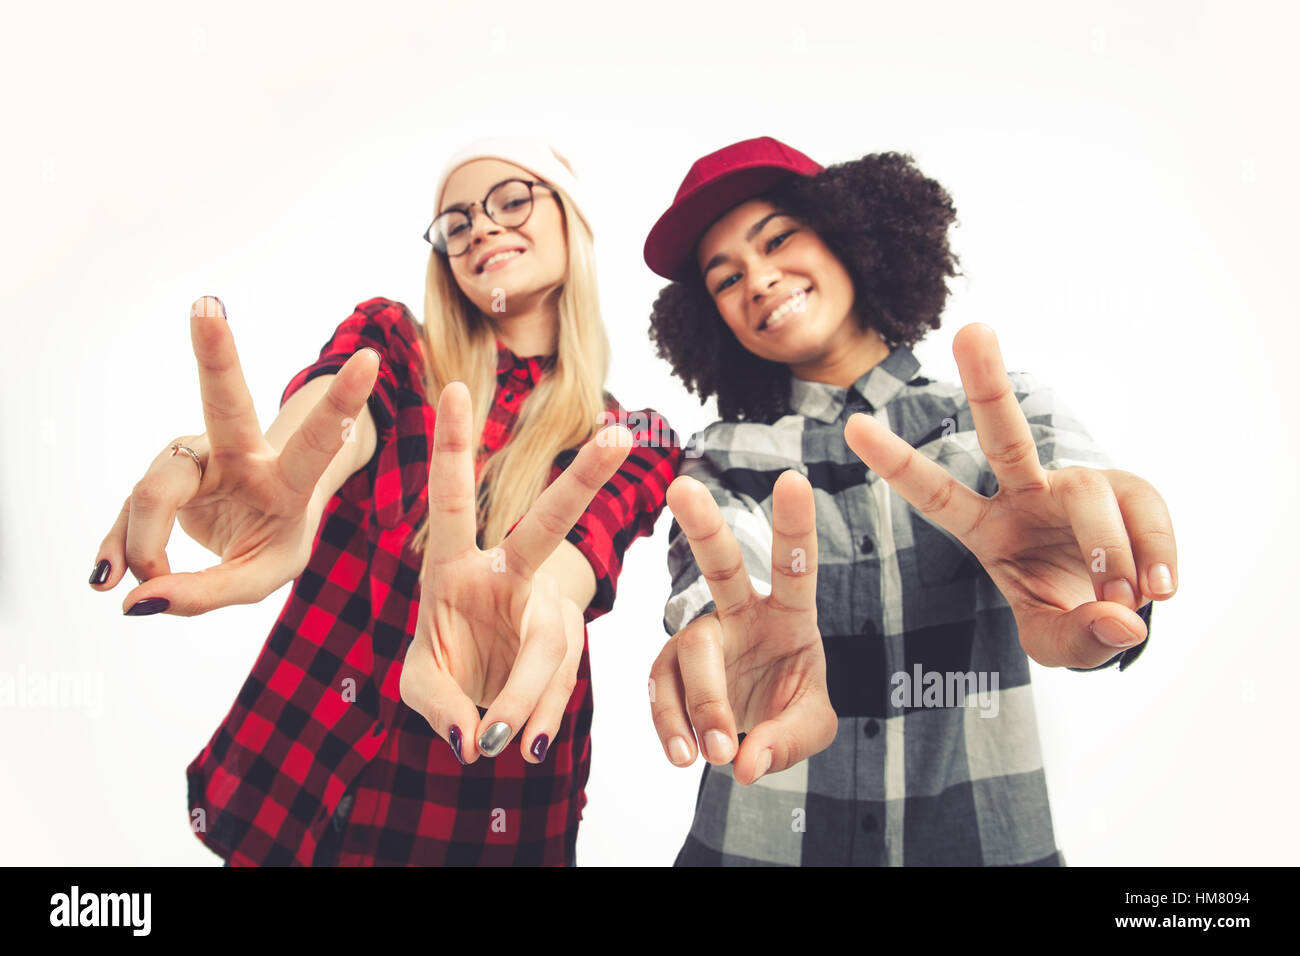 Studioportrait Lebensstil der beiden besten Freunde Hipster-Mädchen verrückt und tolle Zeit zusammen. Isoliert auf weißem Hintergrund. Stockfoto